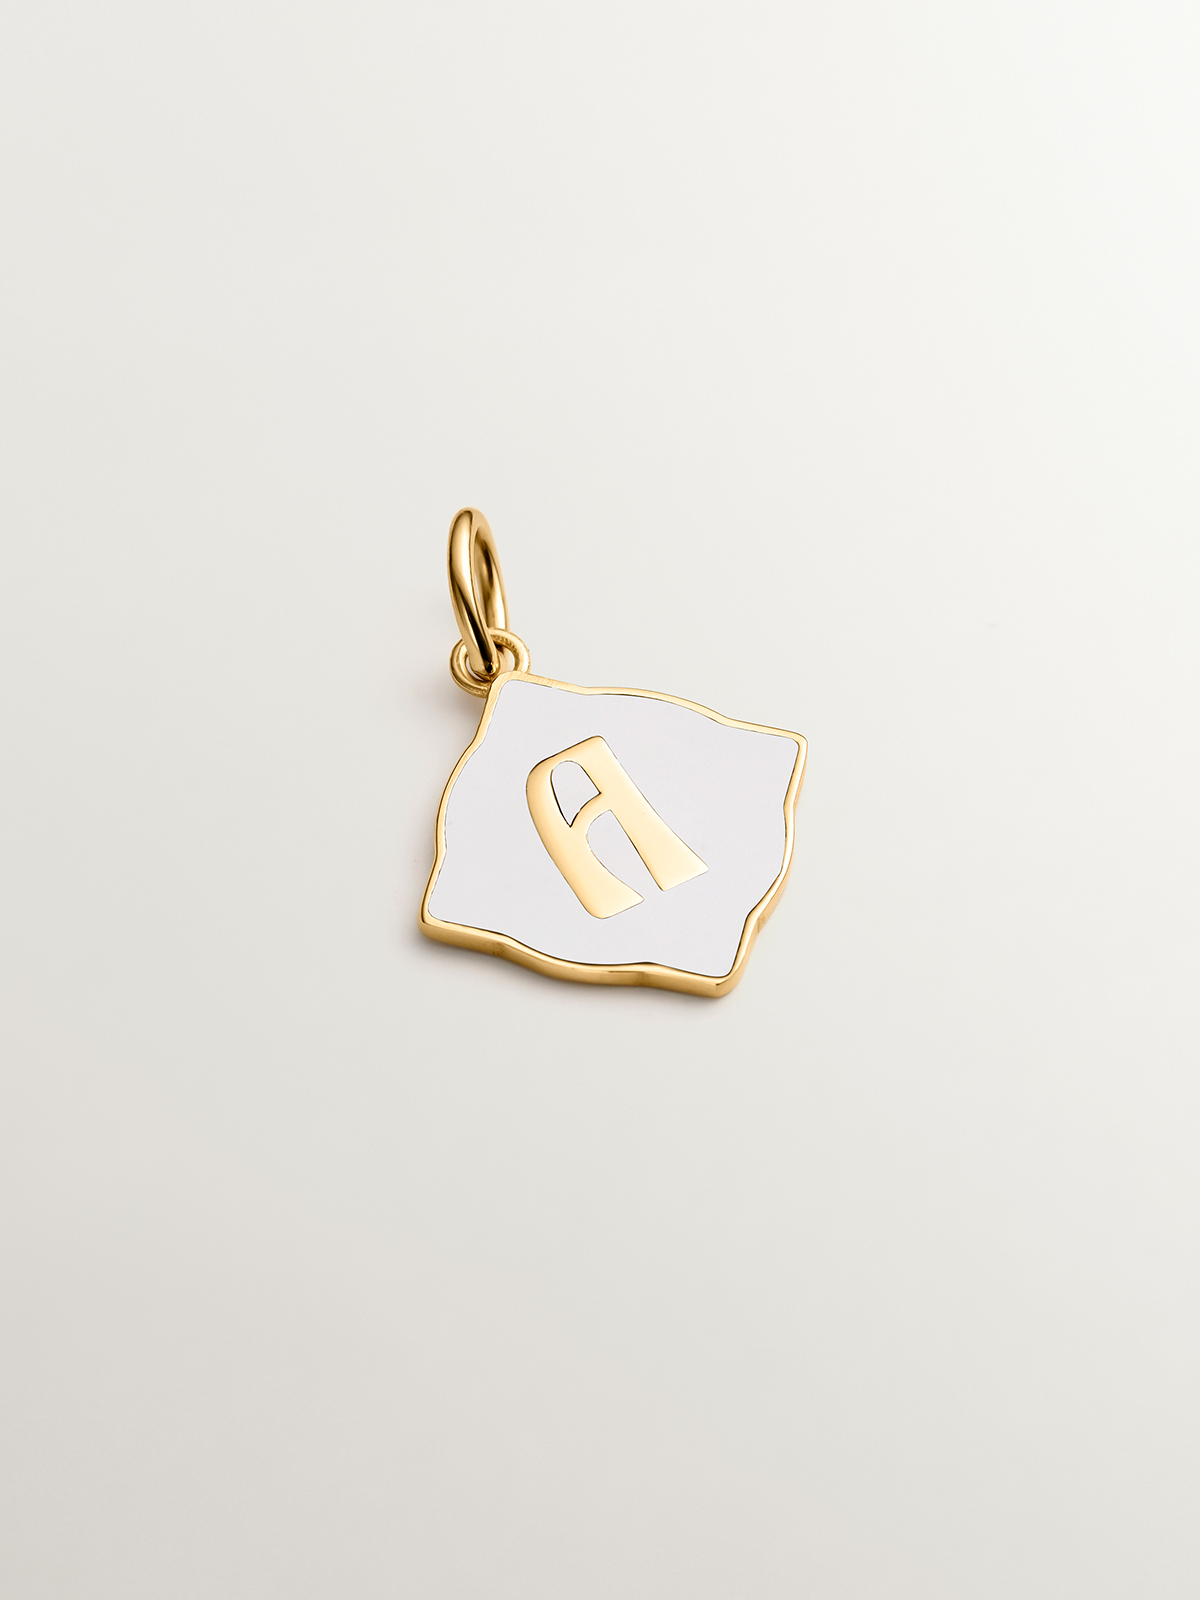 Breloque en argent 925 plaqué or jaune 18K avec initiale A et émail blanc en forme de diamant irrégulier